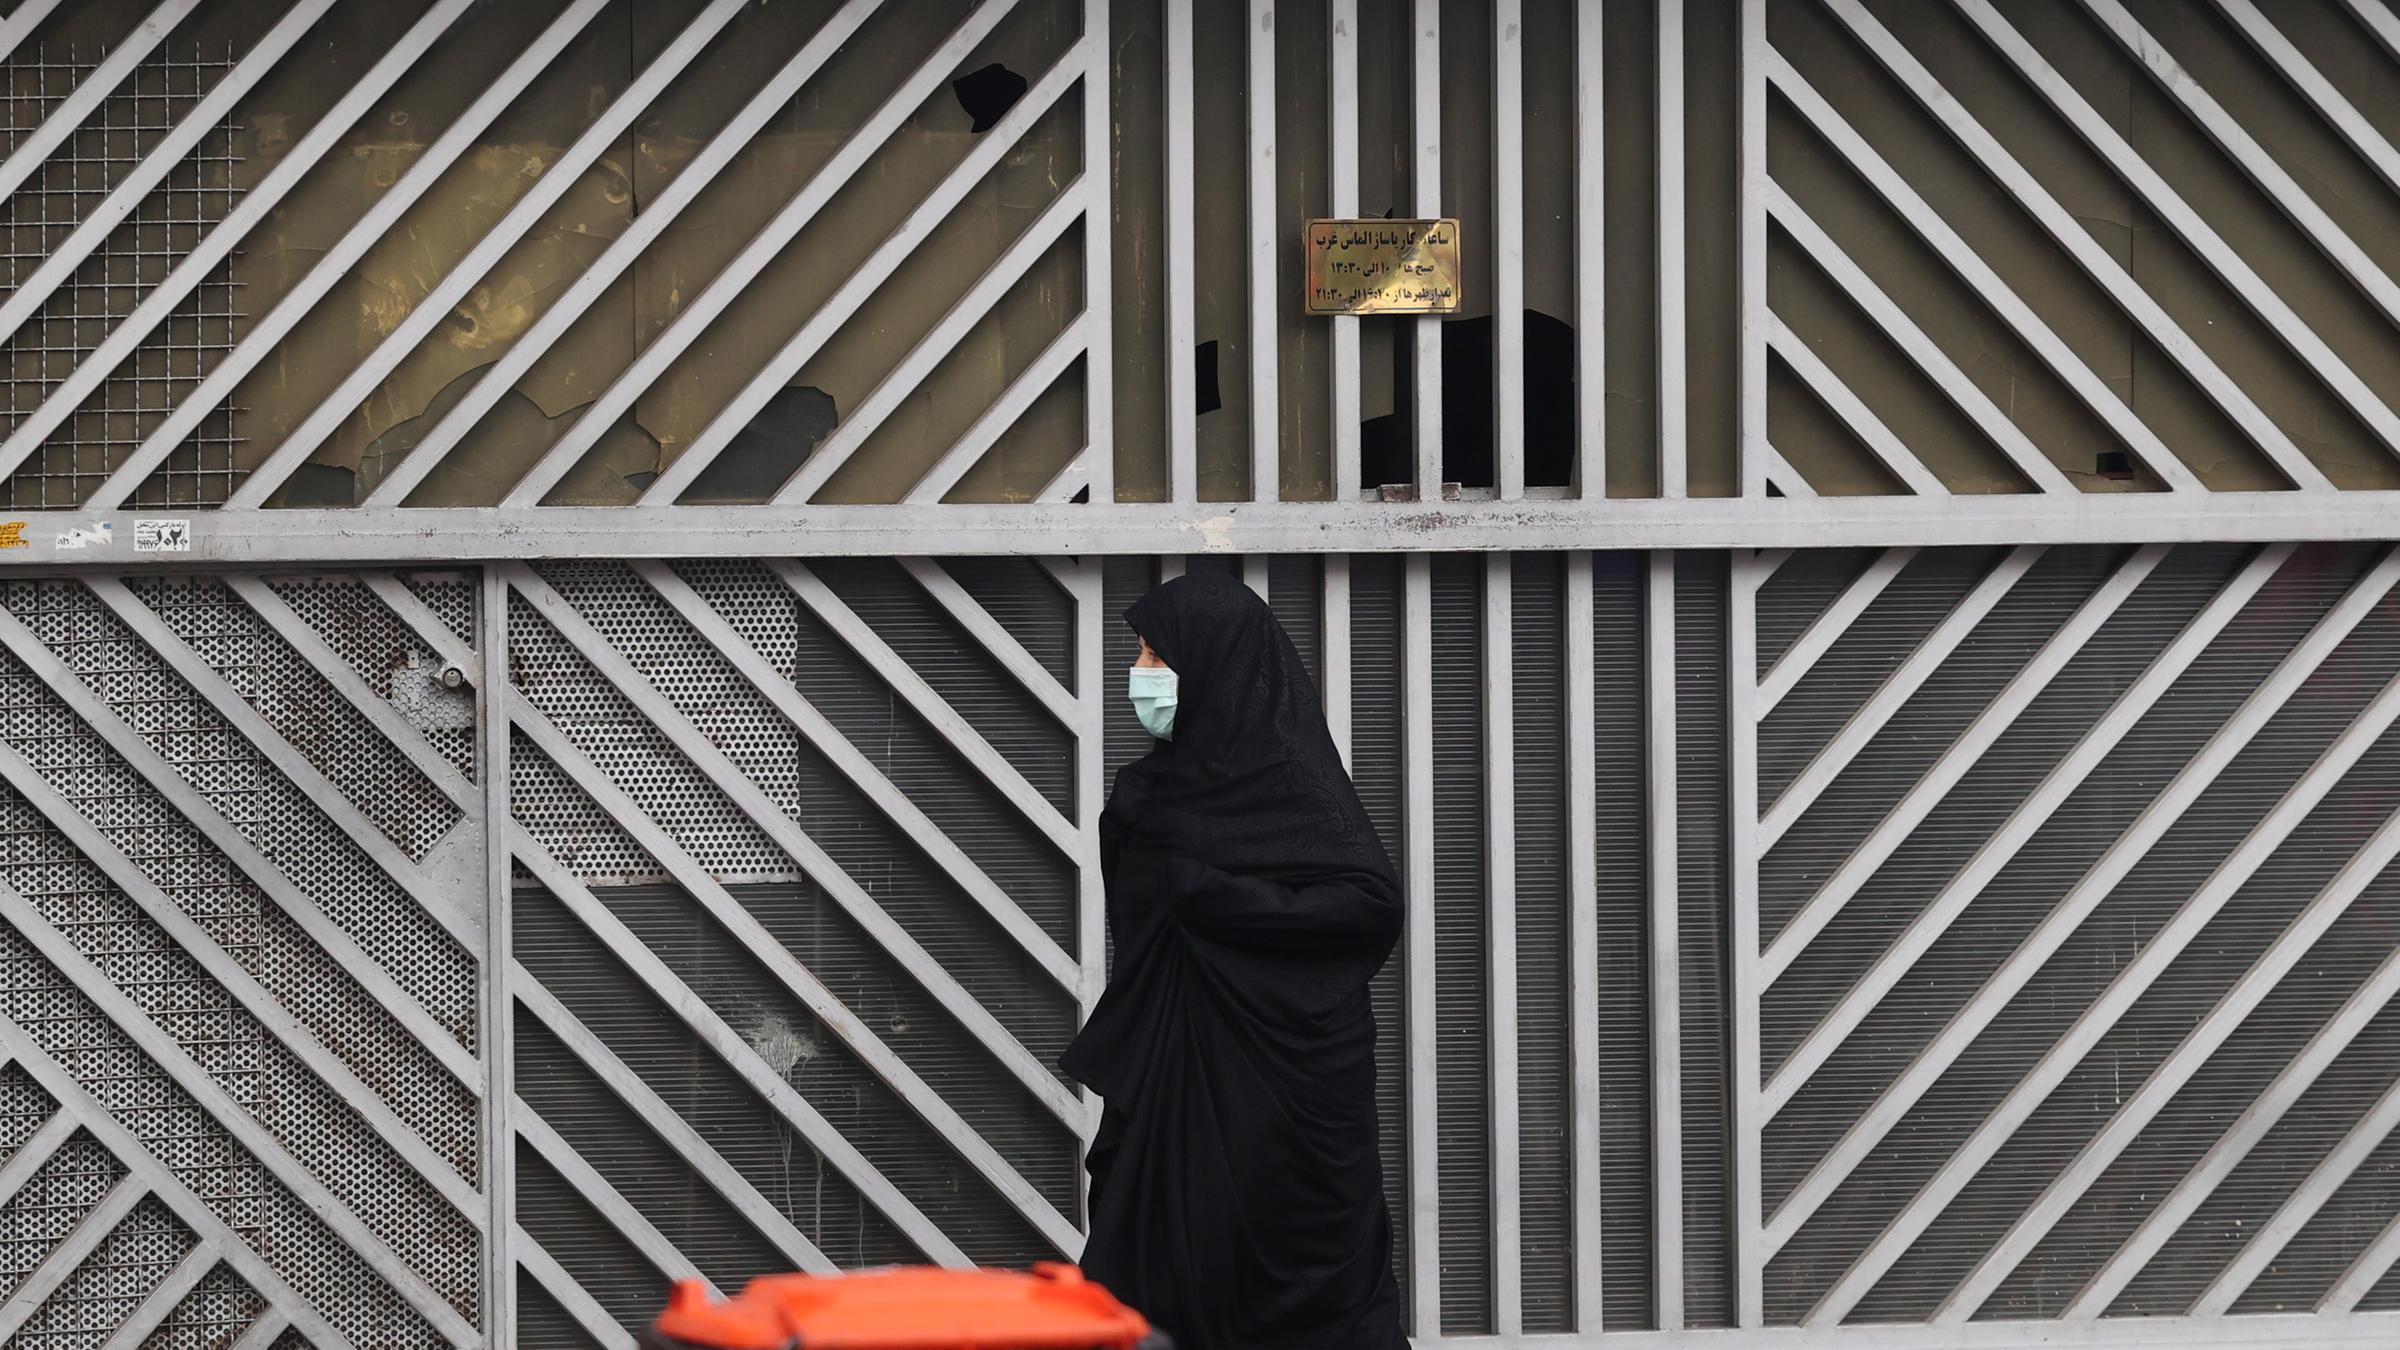 Archiv: Eine Frau geht neben geschlossenen Geschäften in der Innenstadt der Hauptstadt Teheran, Iran, am 05. 06. 2022